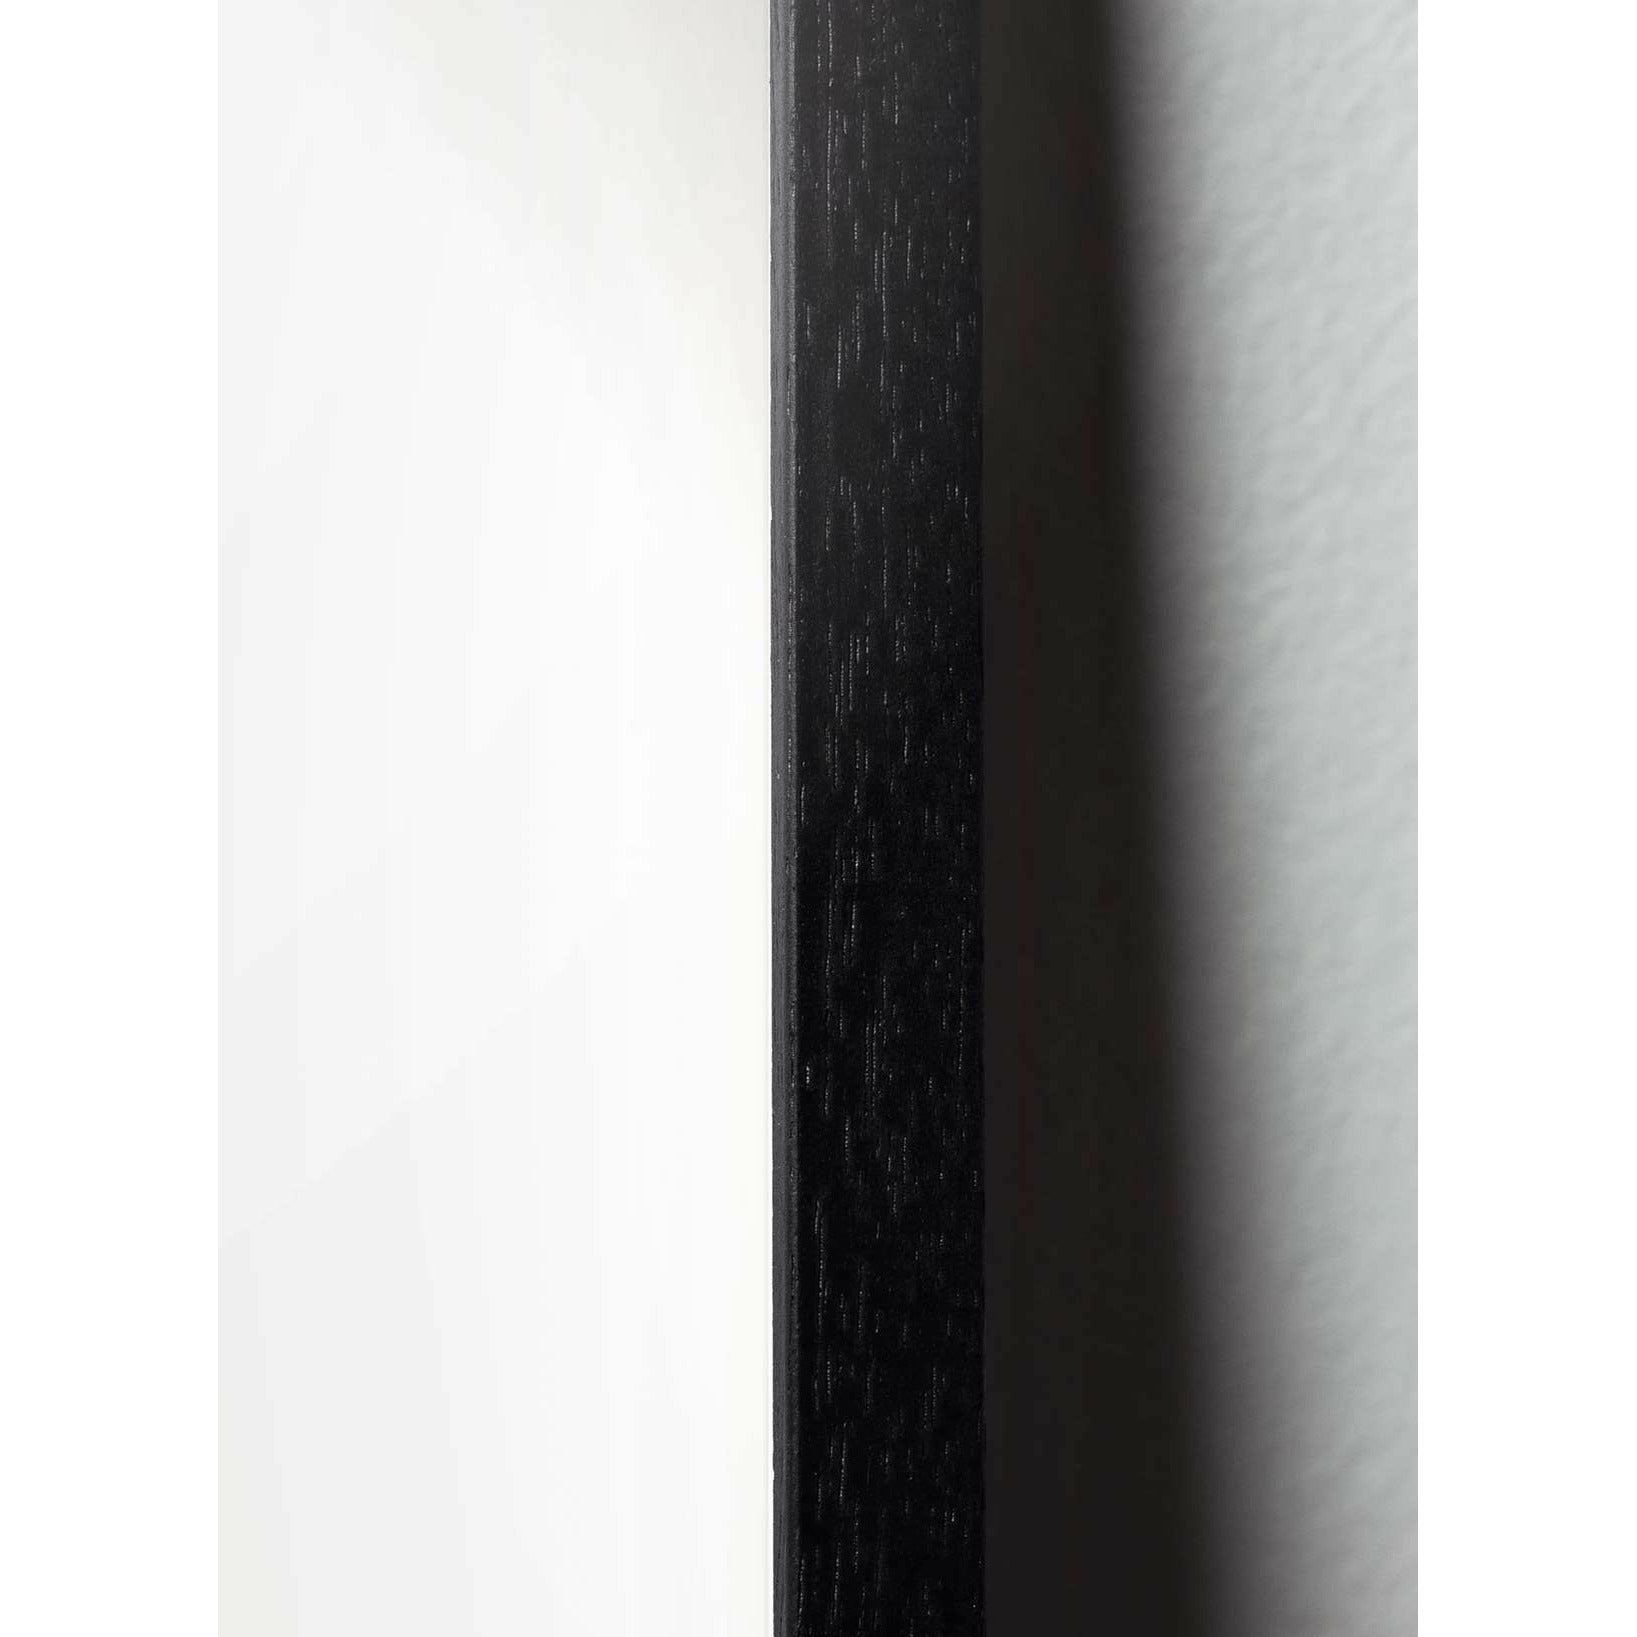 Pomysły plakat linii jaj, rama w czarnym lakierowanym drewnie A5, białe tło